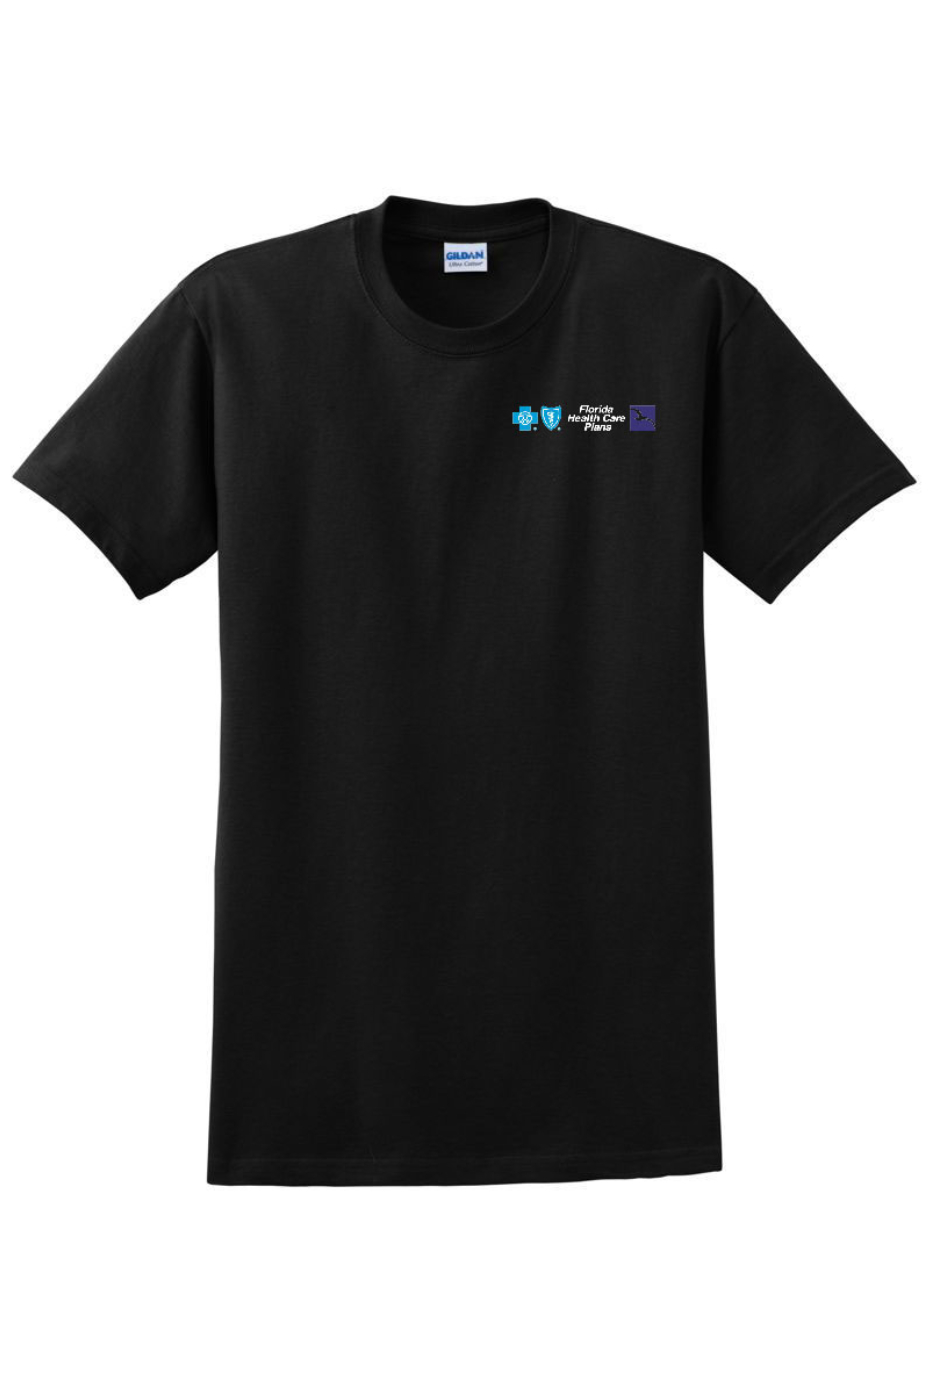 FHCP - 100% Cotton T-Shirt